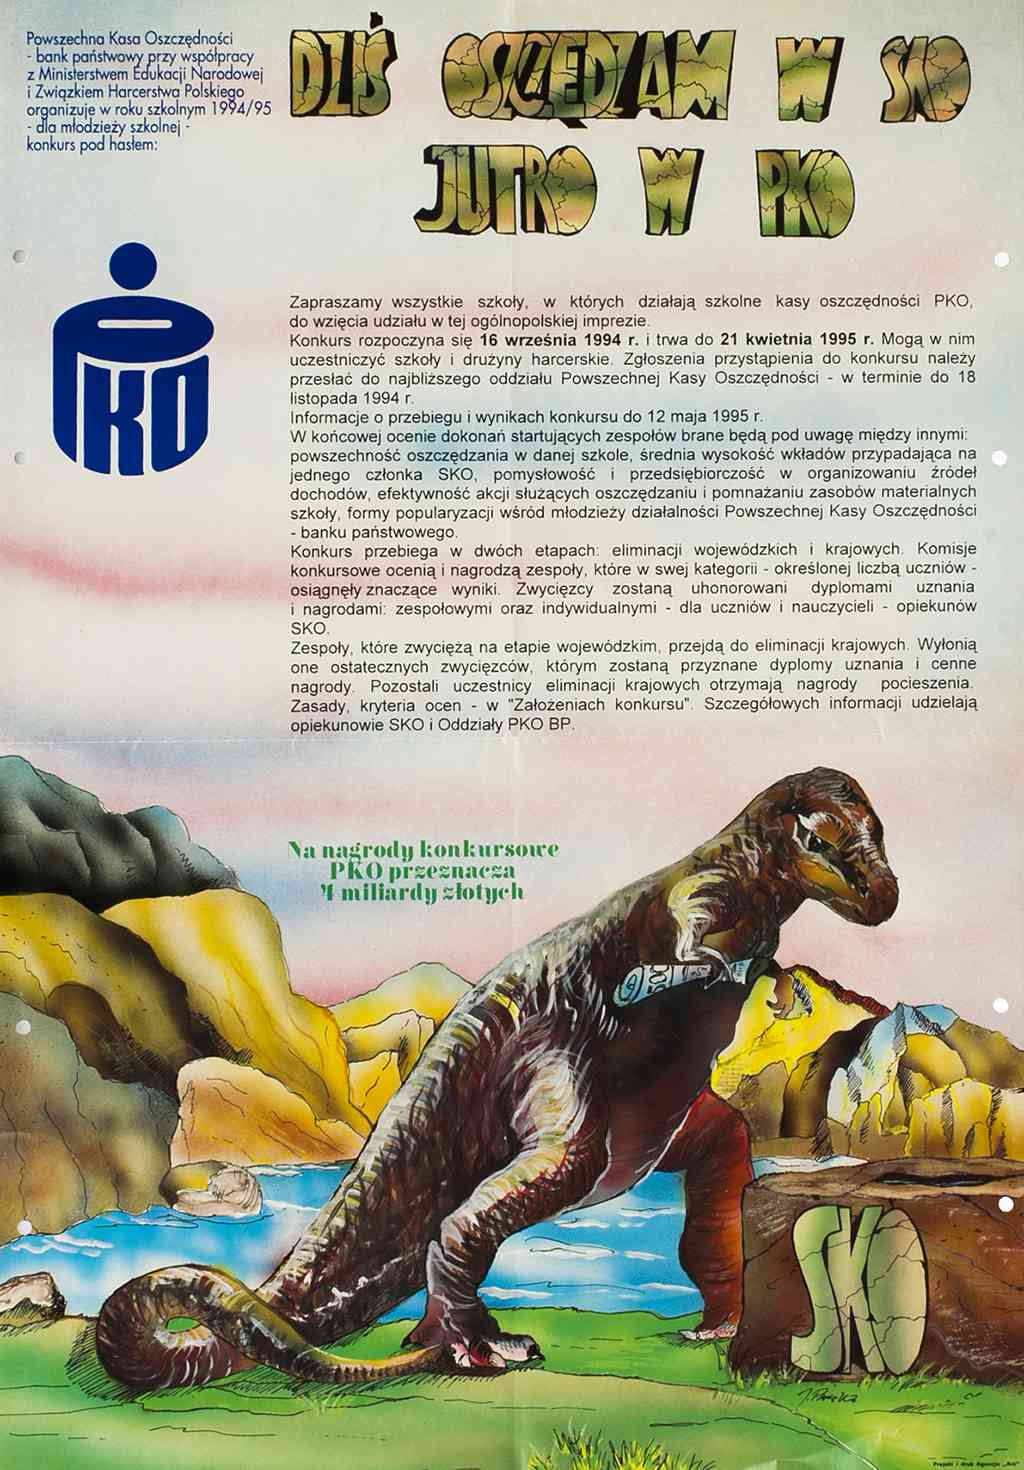 Plakat promujÄcy konkurs DziÅ oszczÄdzam w SKO, jutro w PKO (1994/1995)